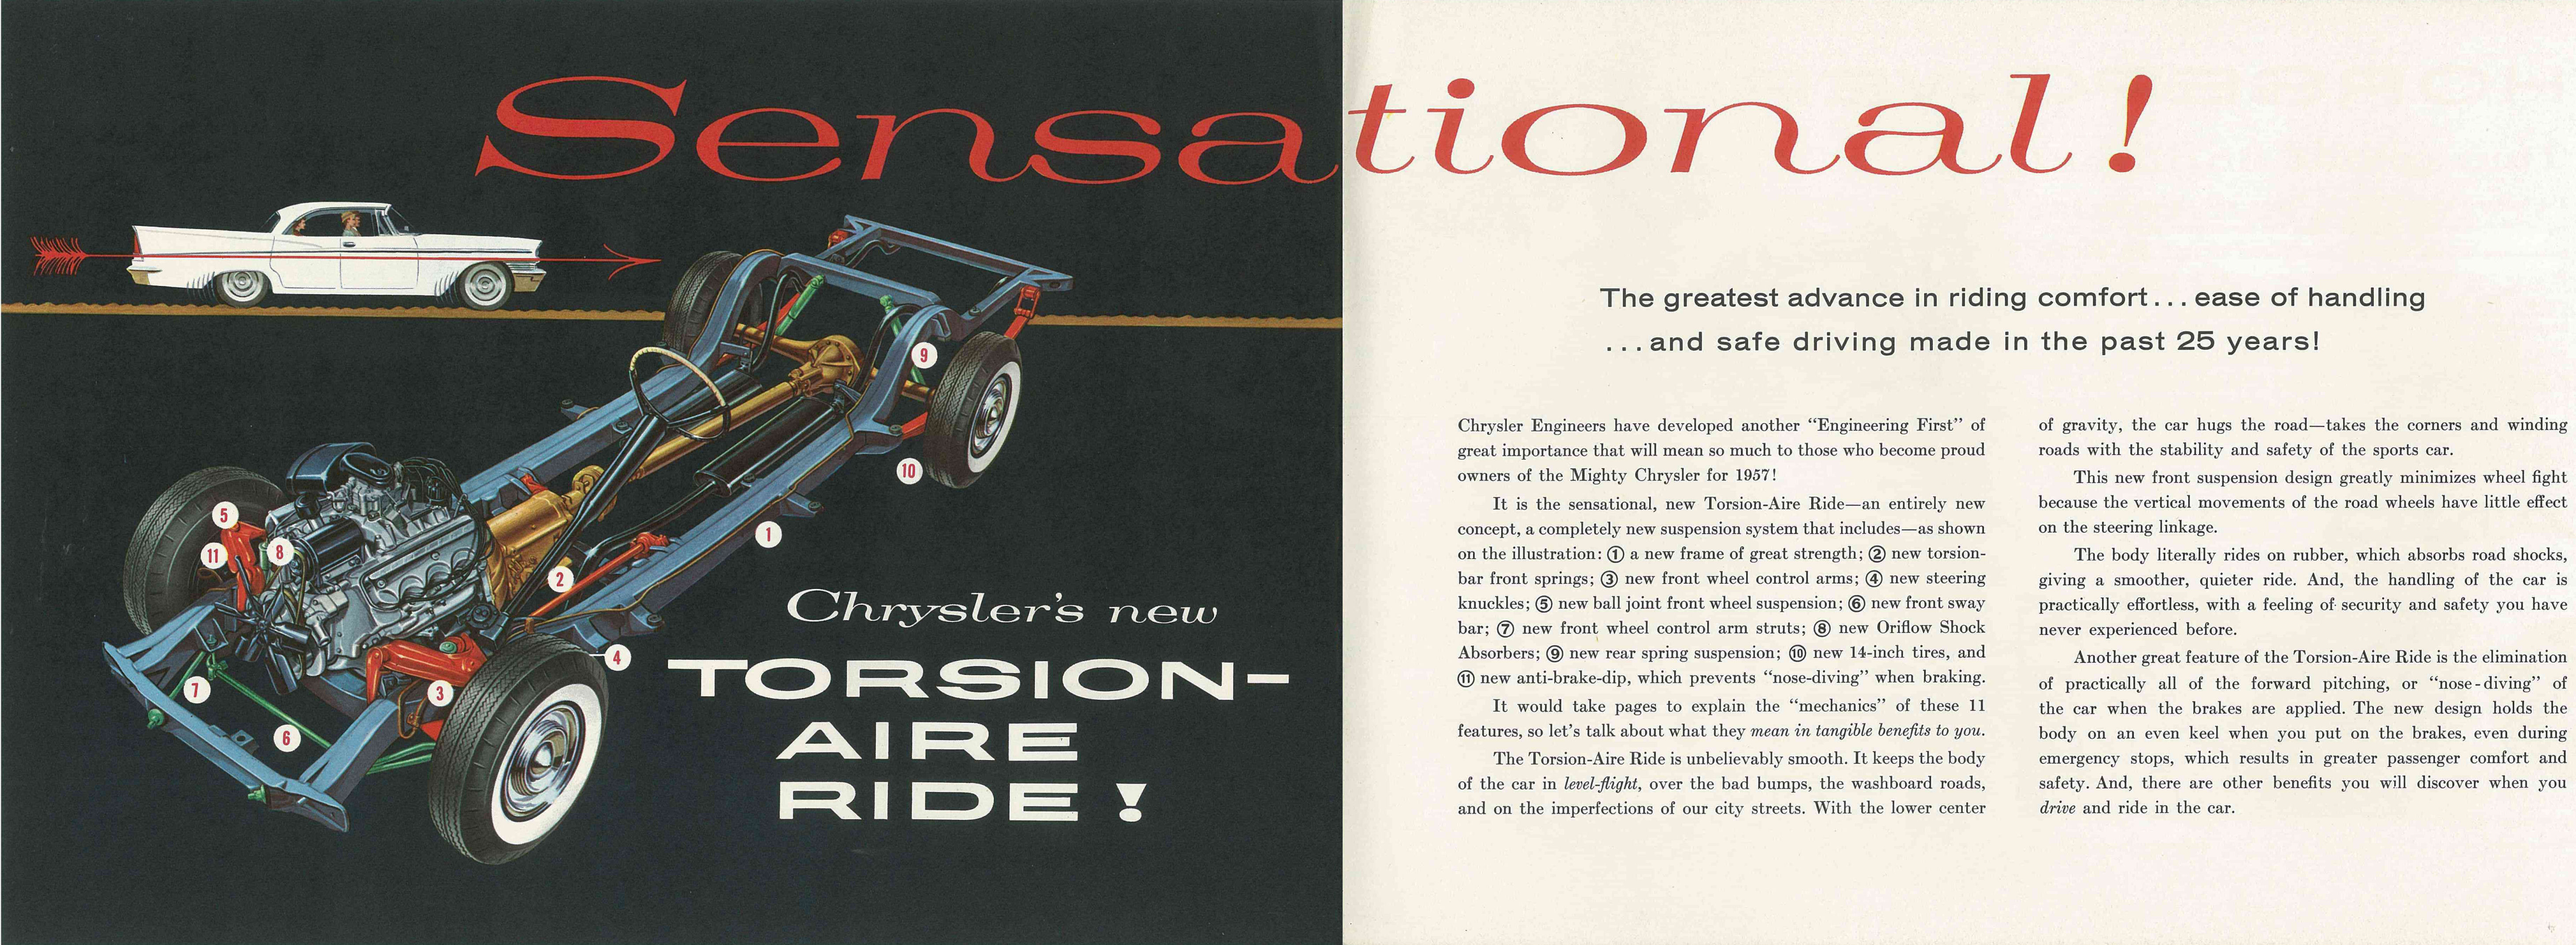 1957_Chrysler_Full_Line_Prestige-18-19